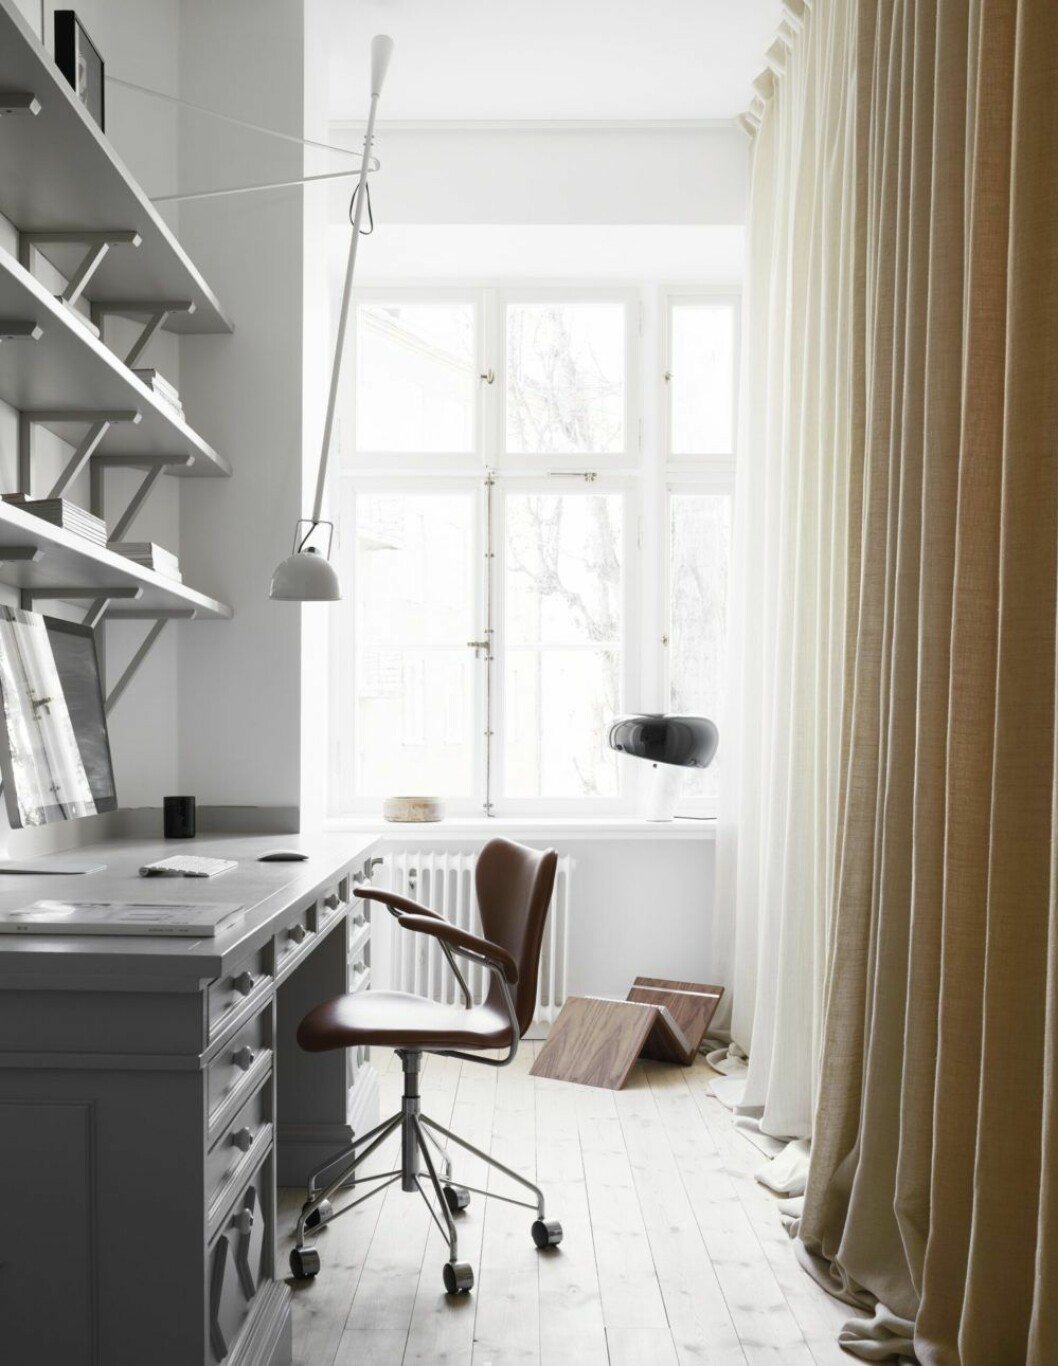 Madeleine Asplund Klingstedts kontor med Arne Jacobsen stol.